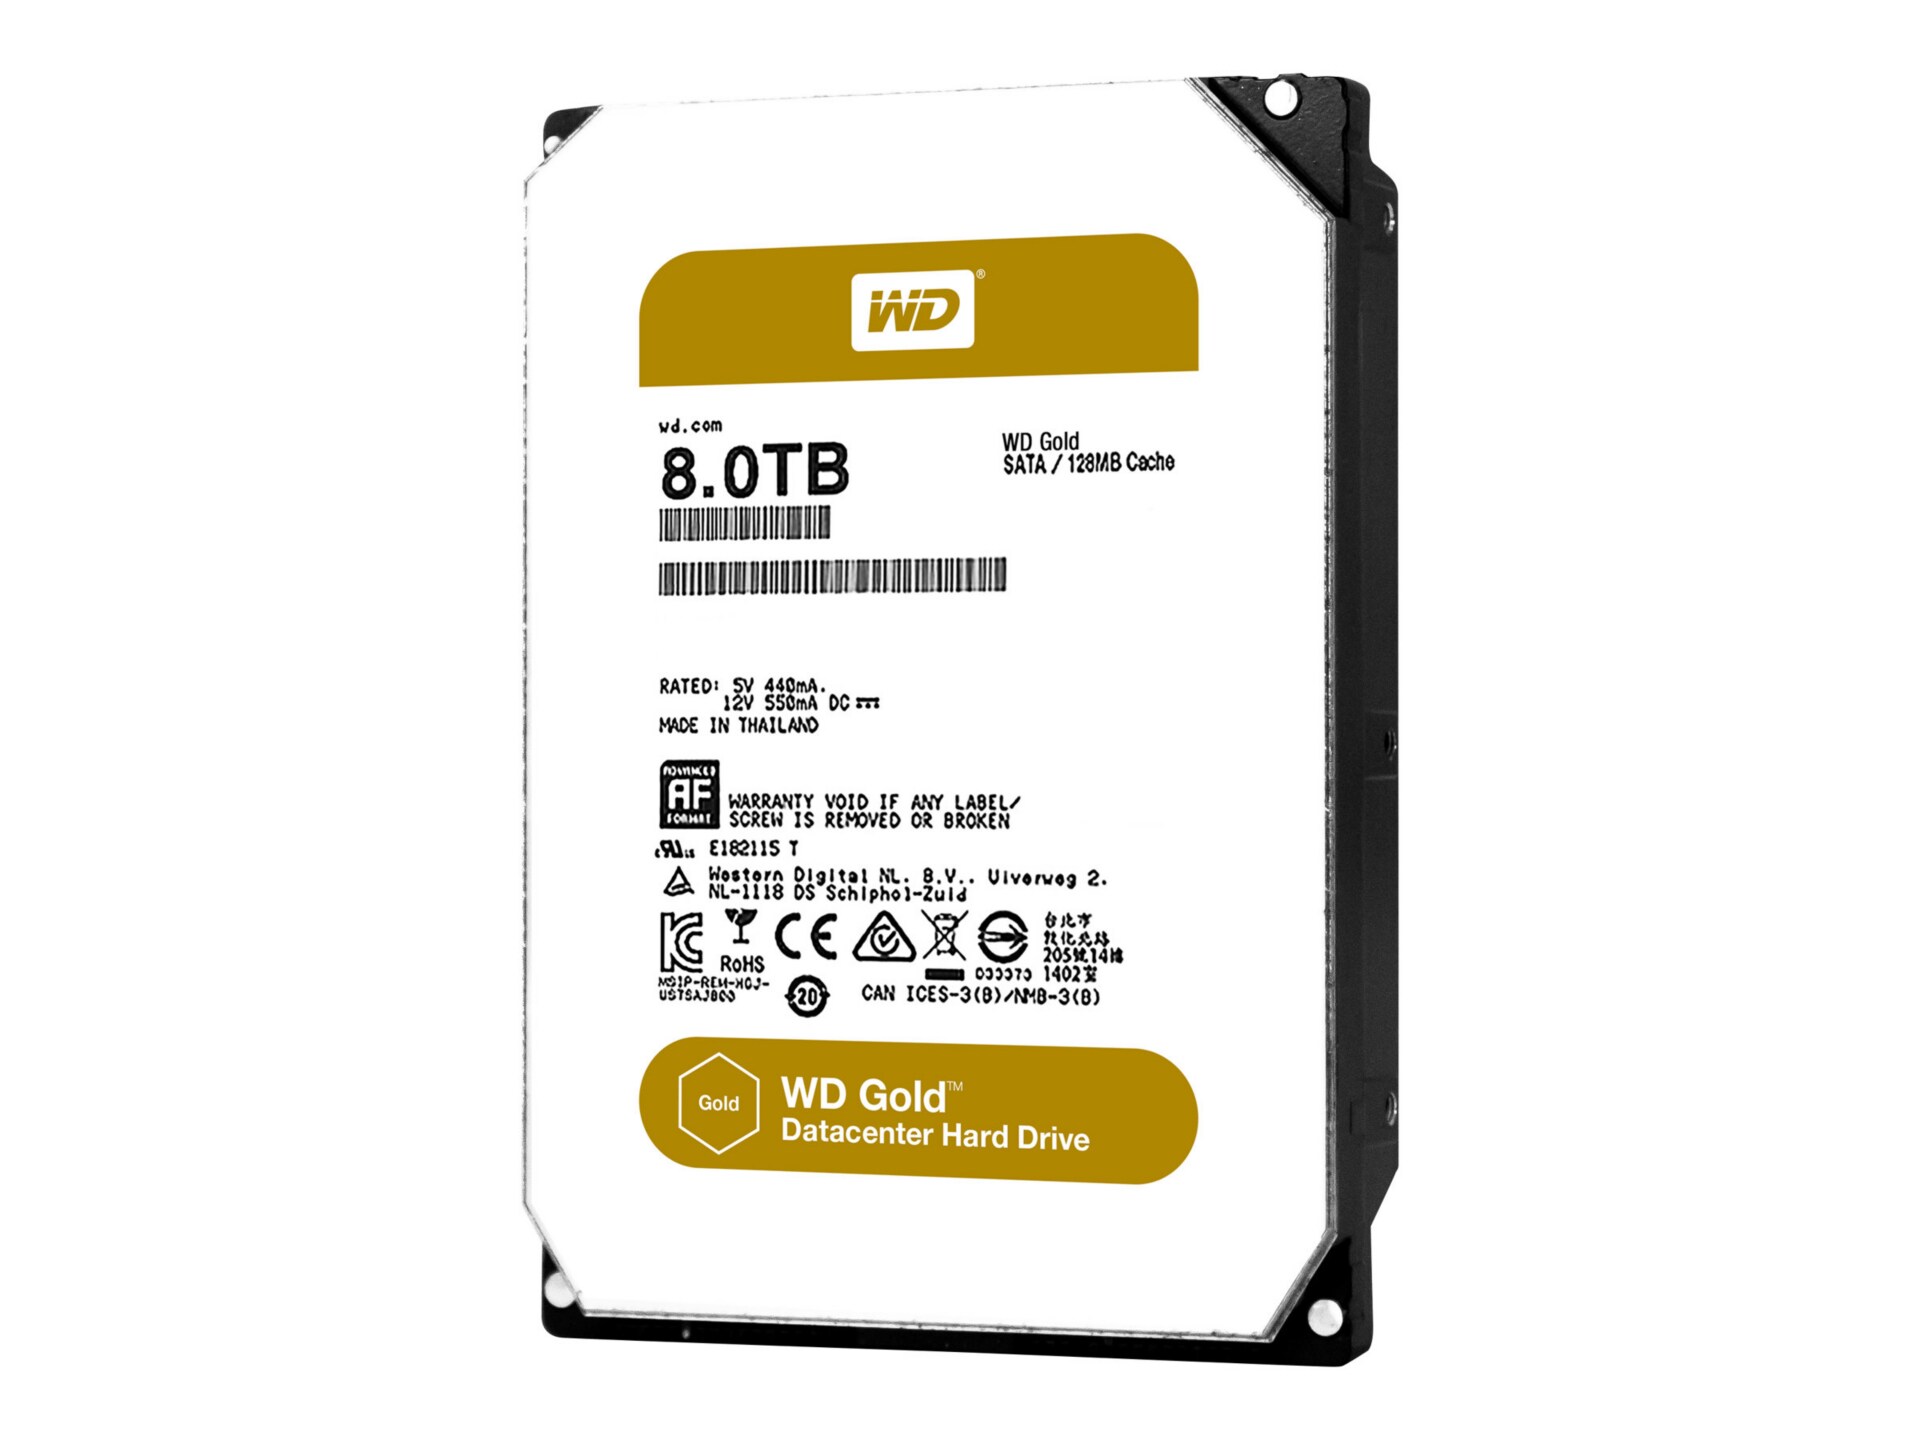 WD Gold Datacenter Hard Drive WD8002FRYZ - hard drive - 8 TB - SATA 6Gb/s